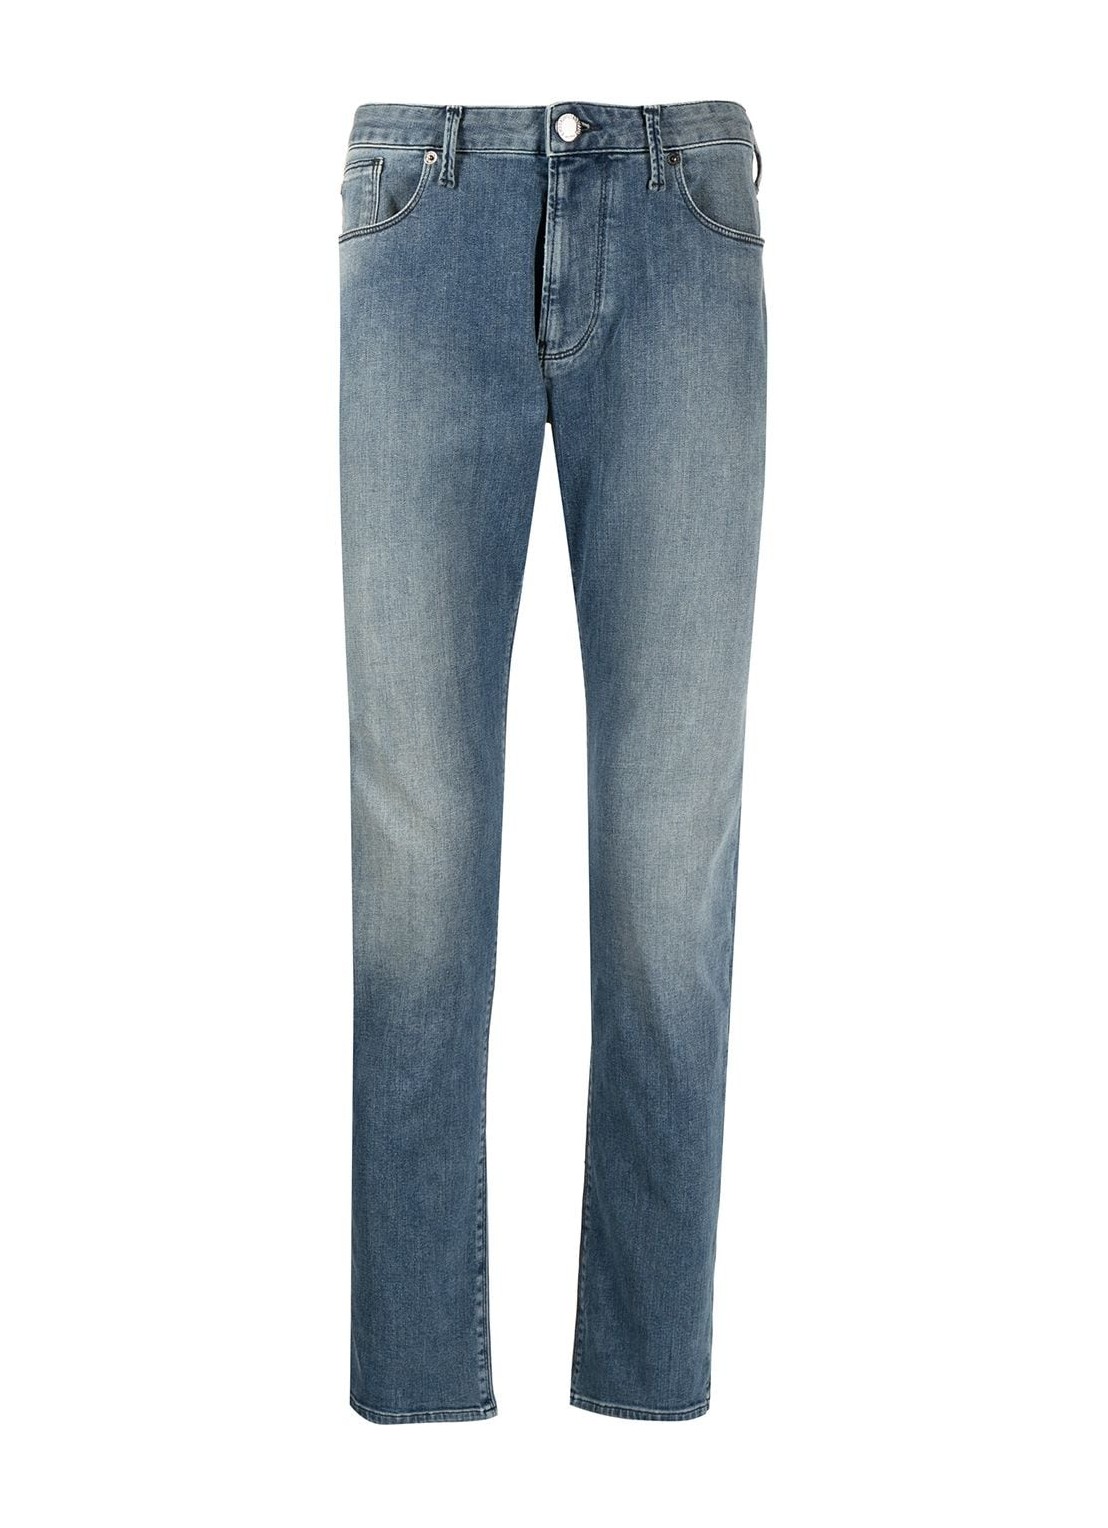 Pantalon jeans emporio armani j06 - 8n1j061g19z 0943 talla Azul
 